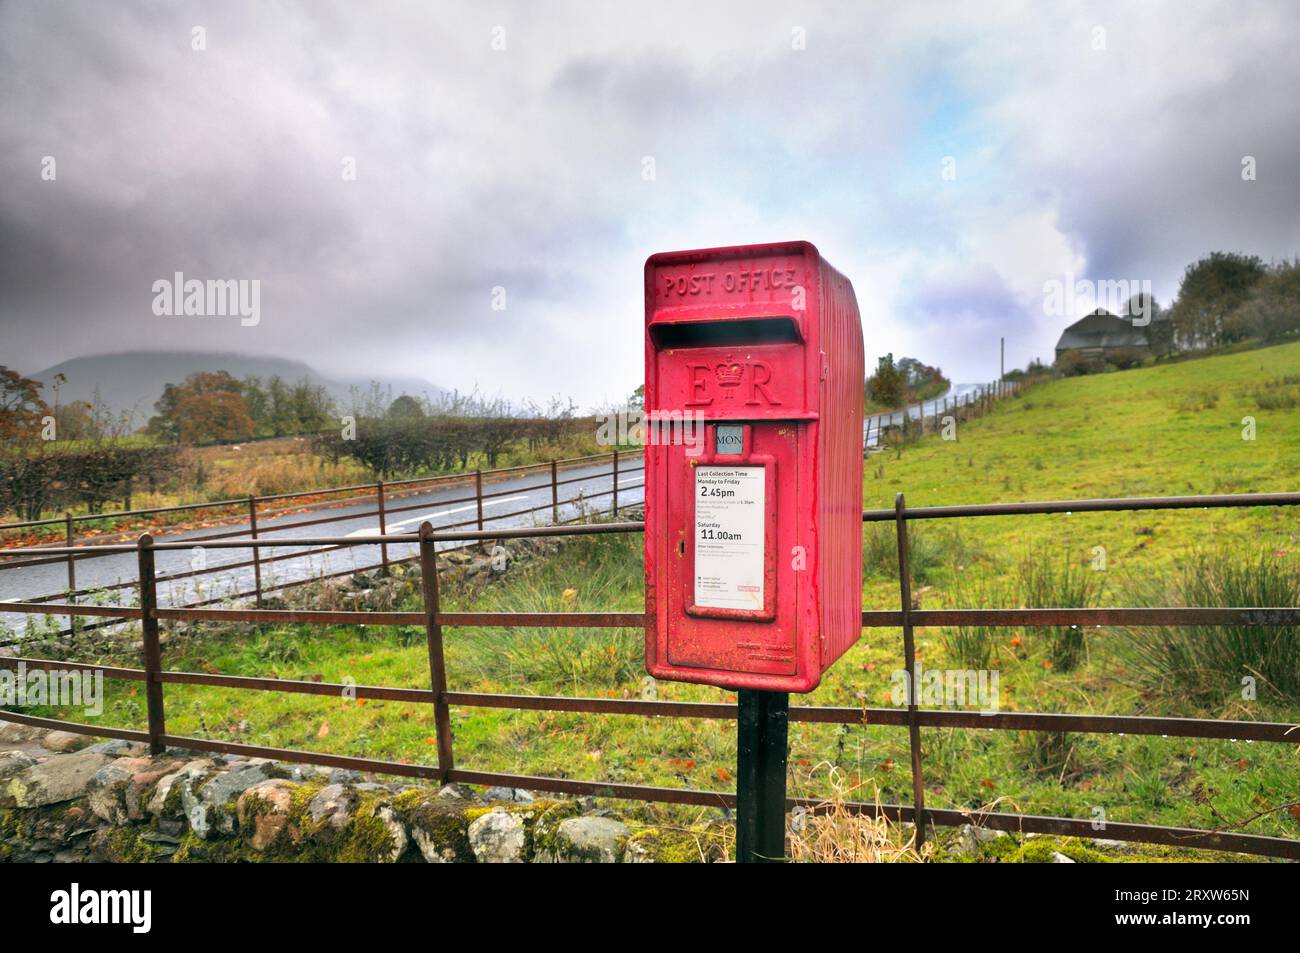 Royal Mail casella postale in una posizione rurale, REGNO UNITO Foto Stock